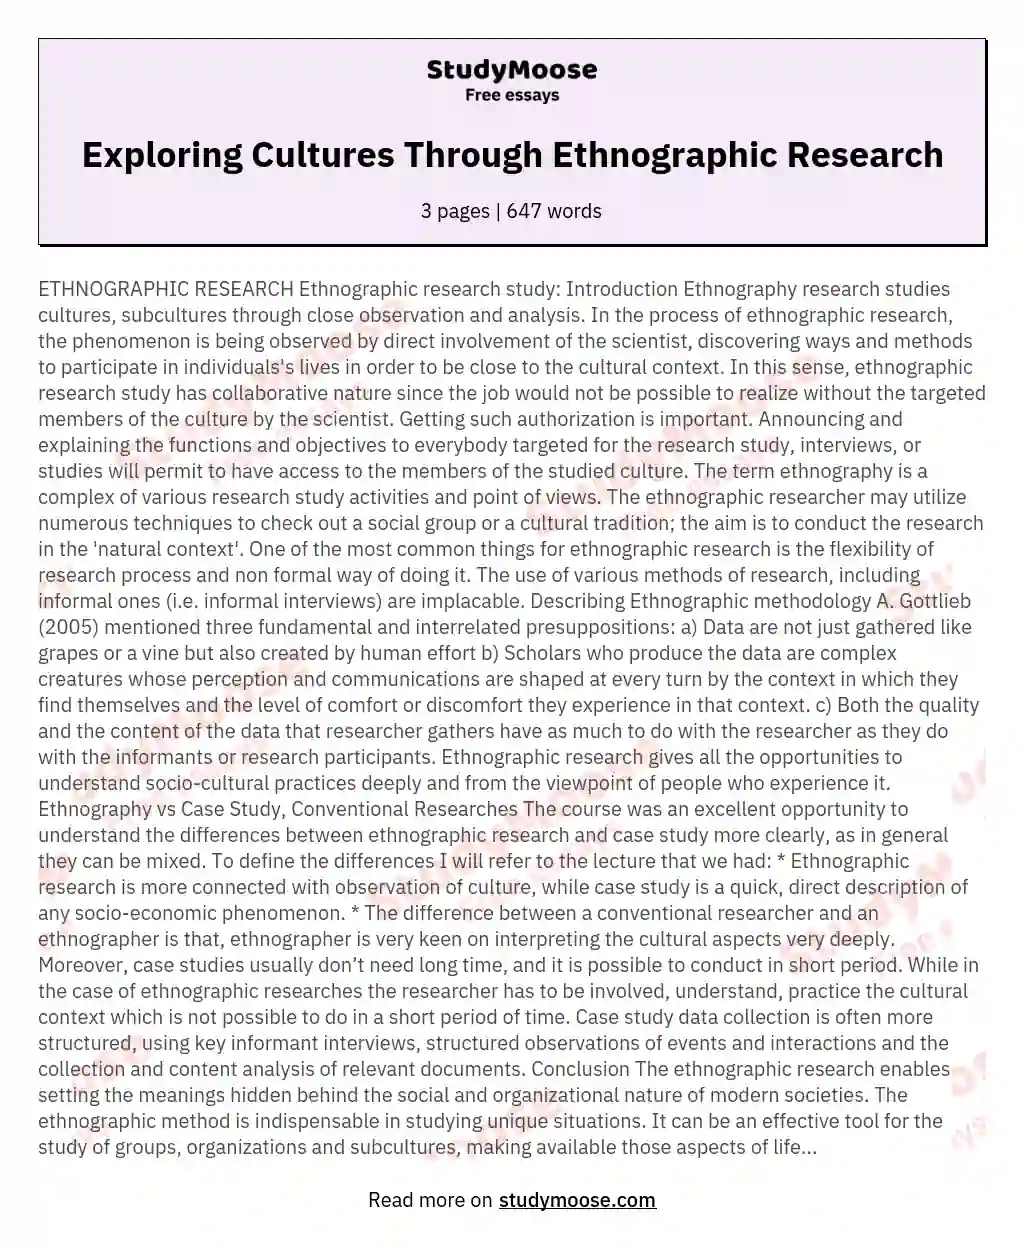 Exploring Cultures Through Ethnographic Research essay